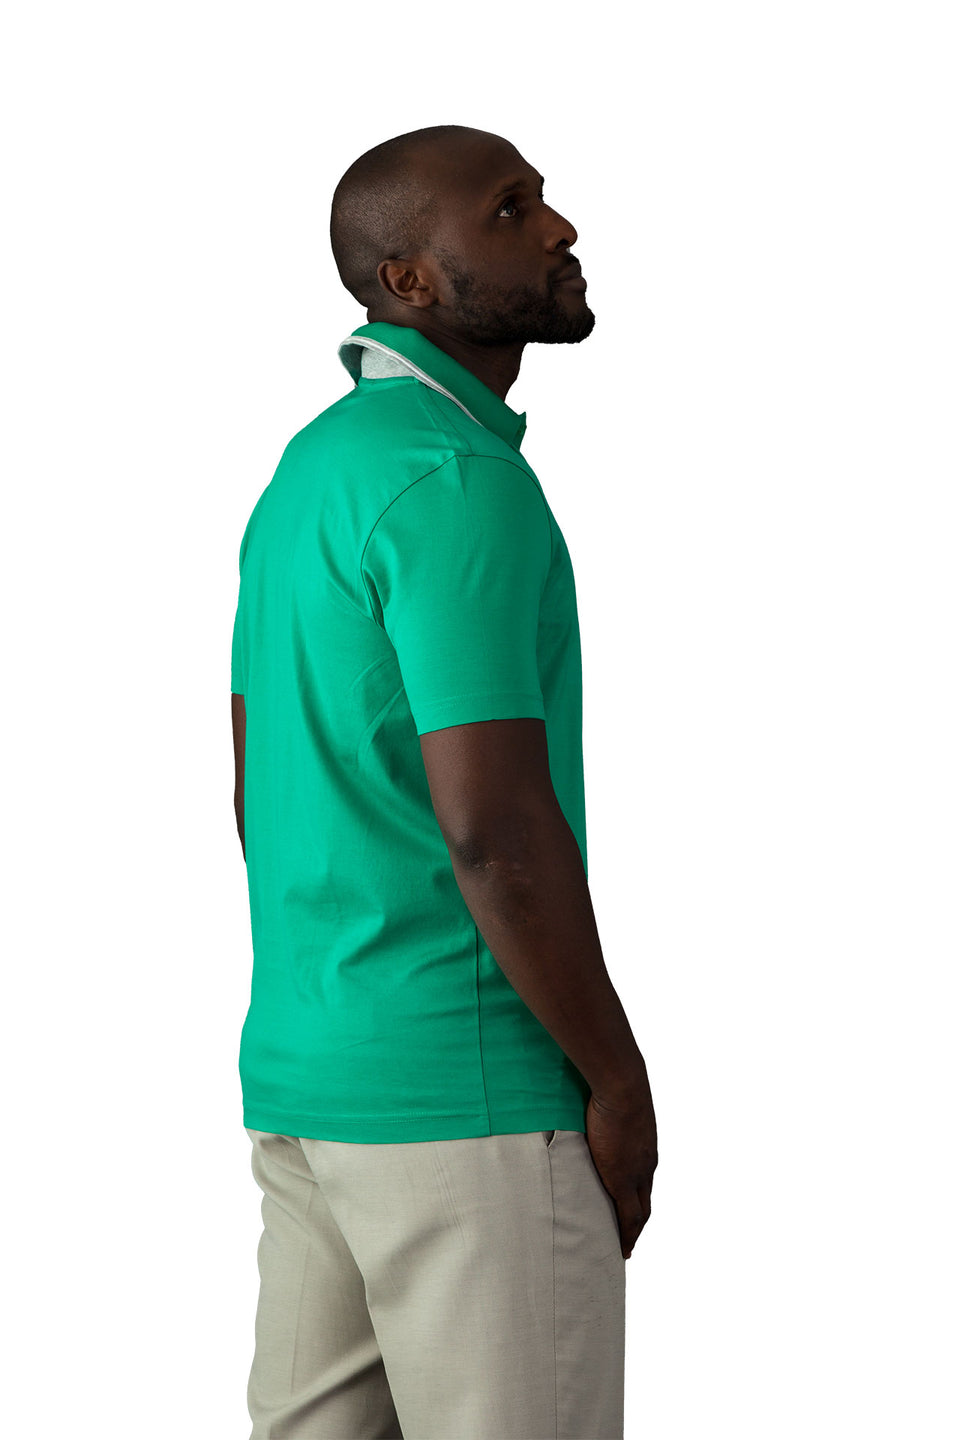 Hugo Boss Light Green Polo Shirt - Camden Connaught